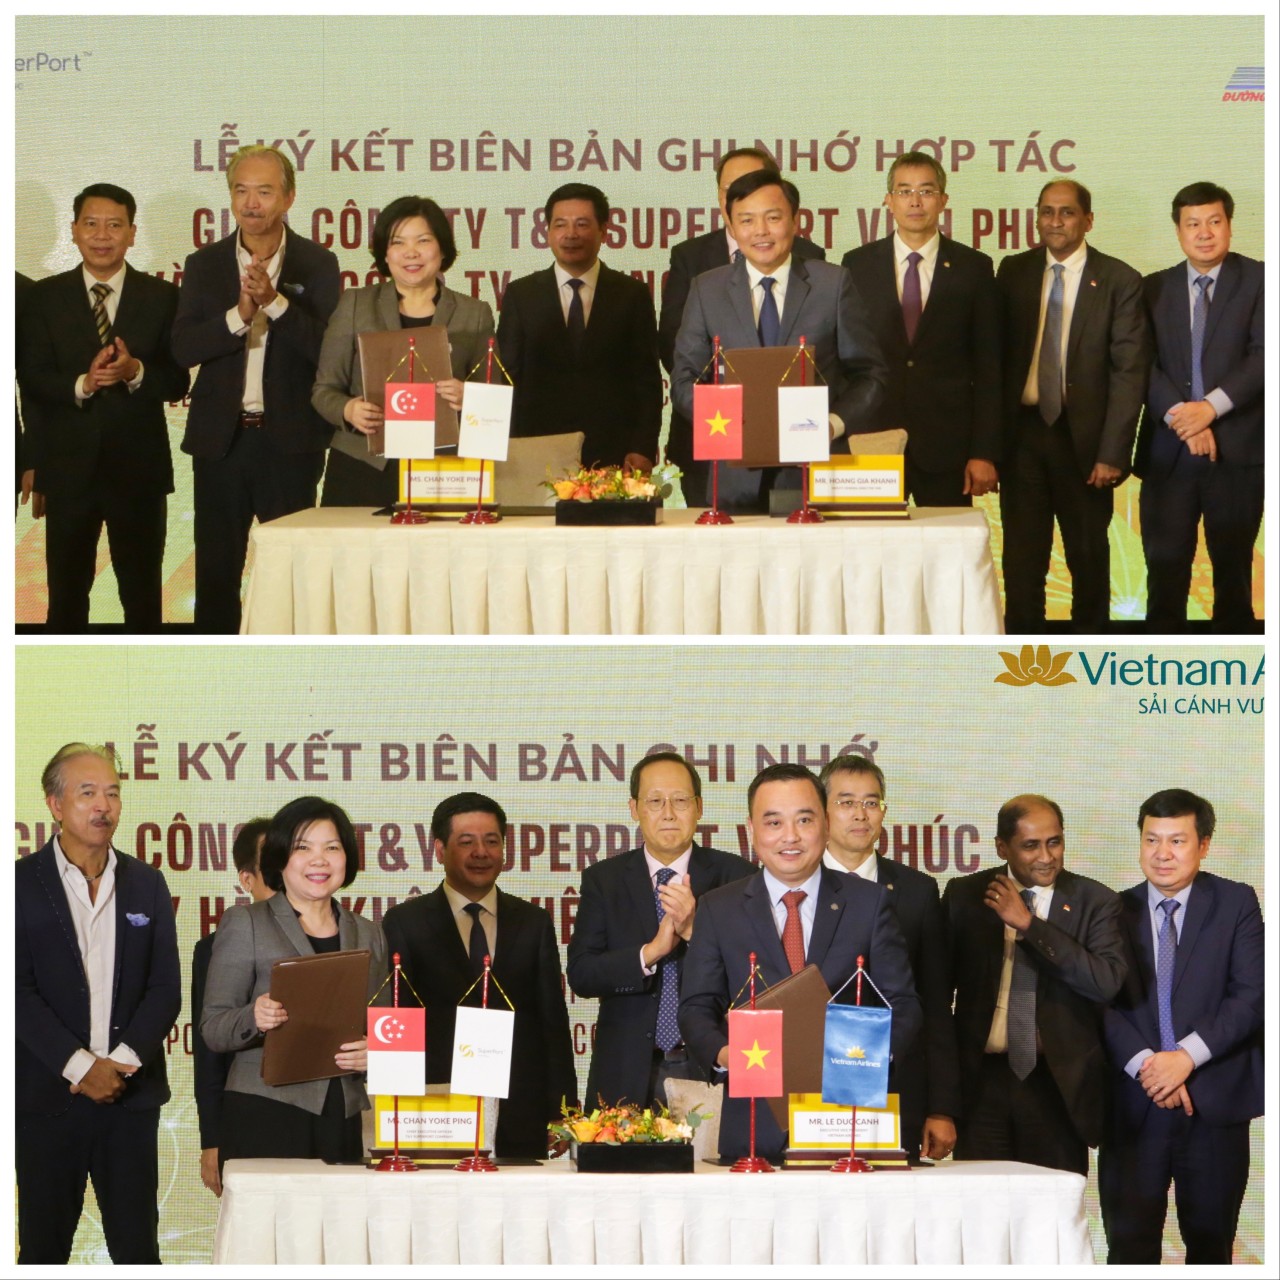 Đại diện lãnh đạo Công ty T&Y SuperPort Vĩnh Phúc ký biên bản ghi nhớ hợp tác với Vietnam Airlines và Tổng Công ty đường sắt Việt Nam.